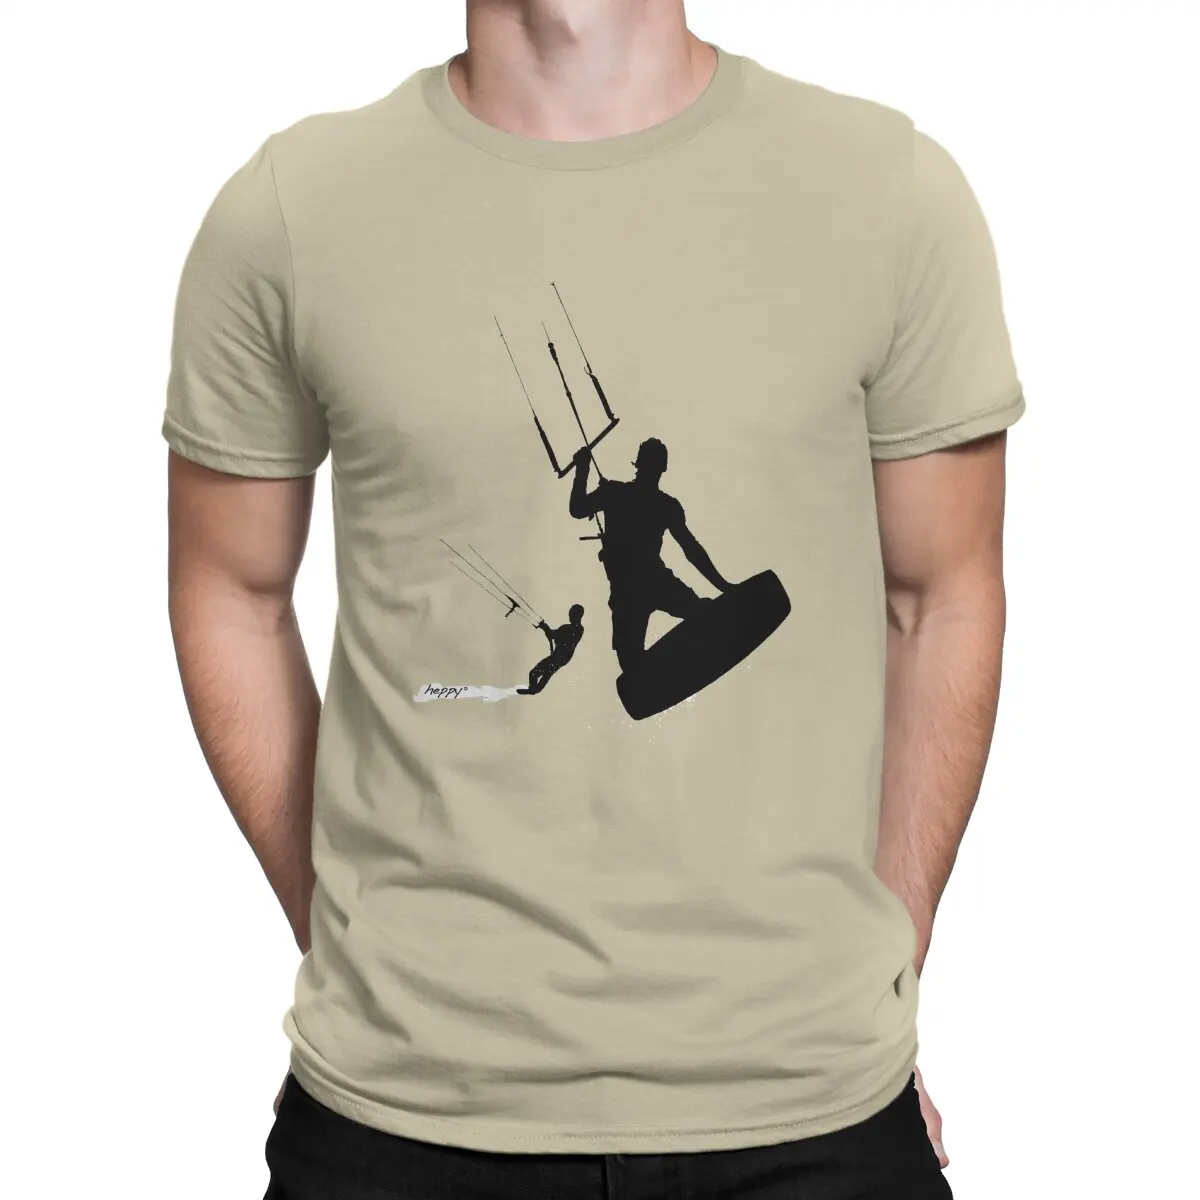 

Мужская футболка для водных видов спорта, отличительная футболка для кайтсерфинга и кайтсерфинга, хипстерская уличная одежда в стиле Харадзюку